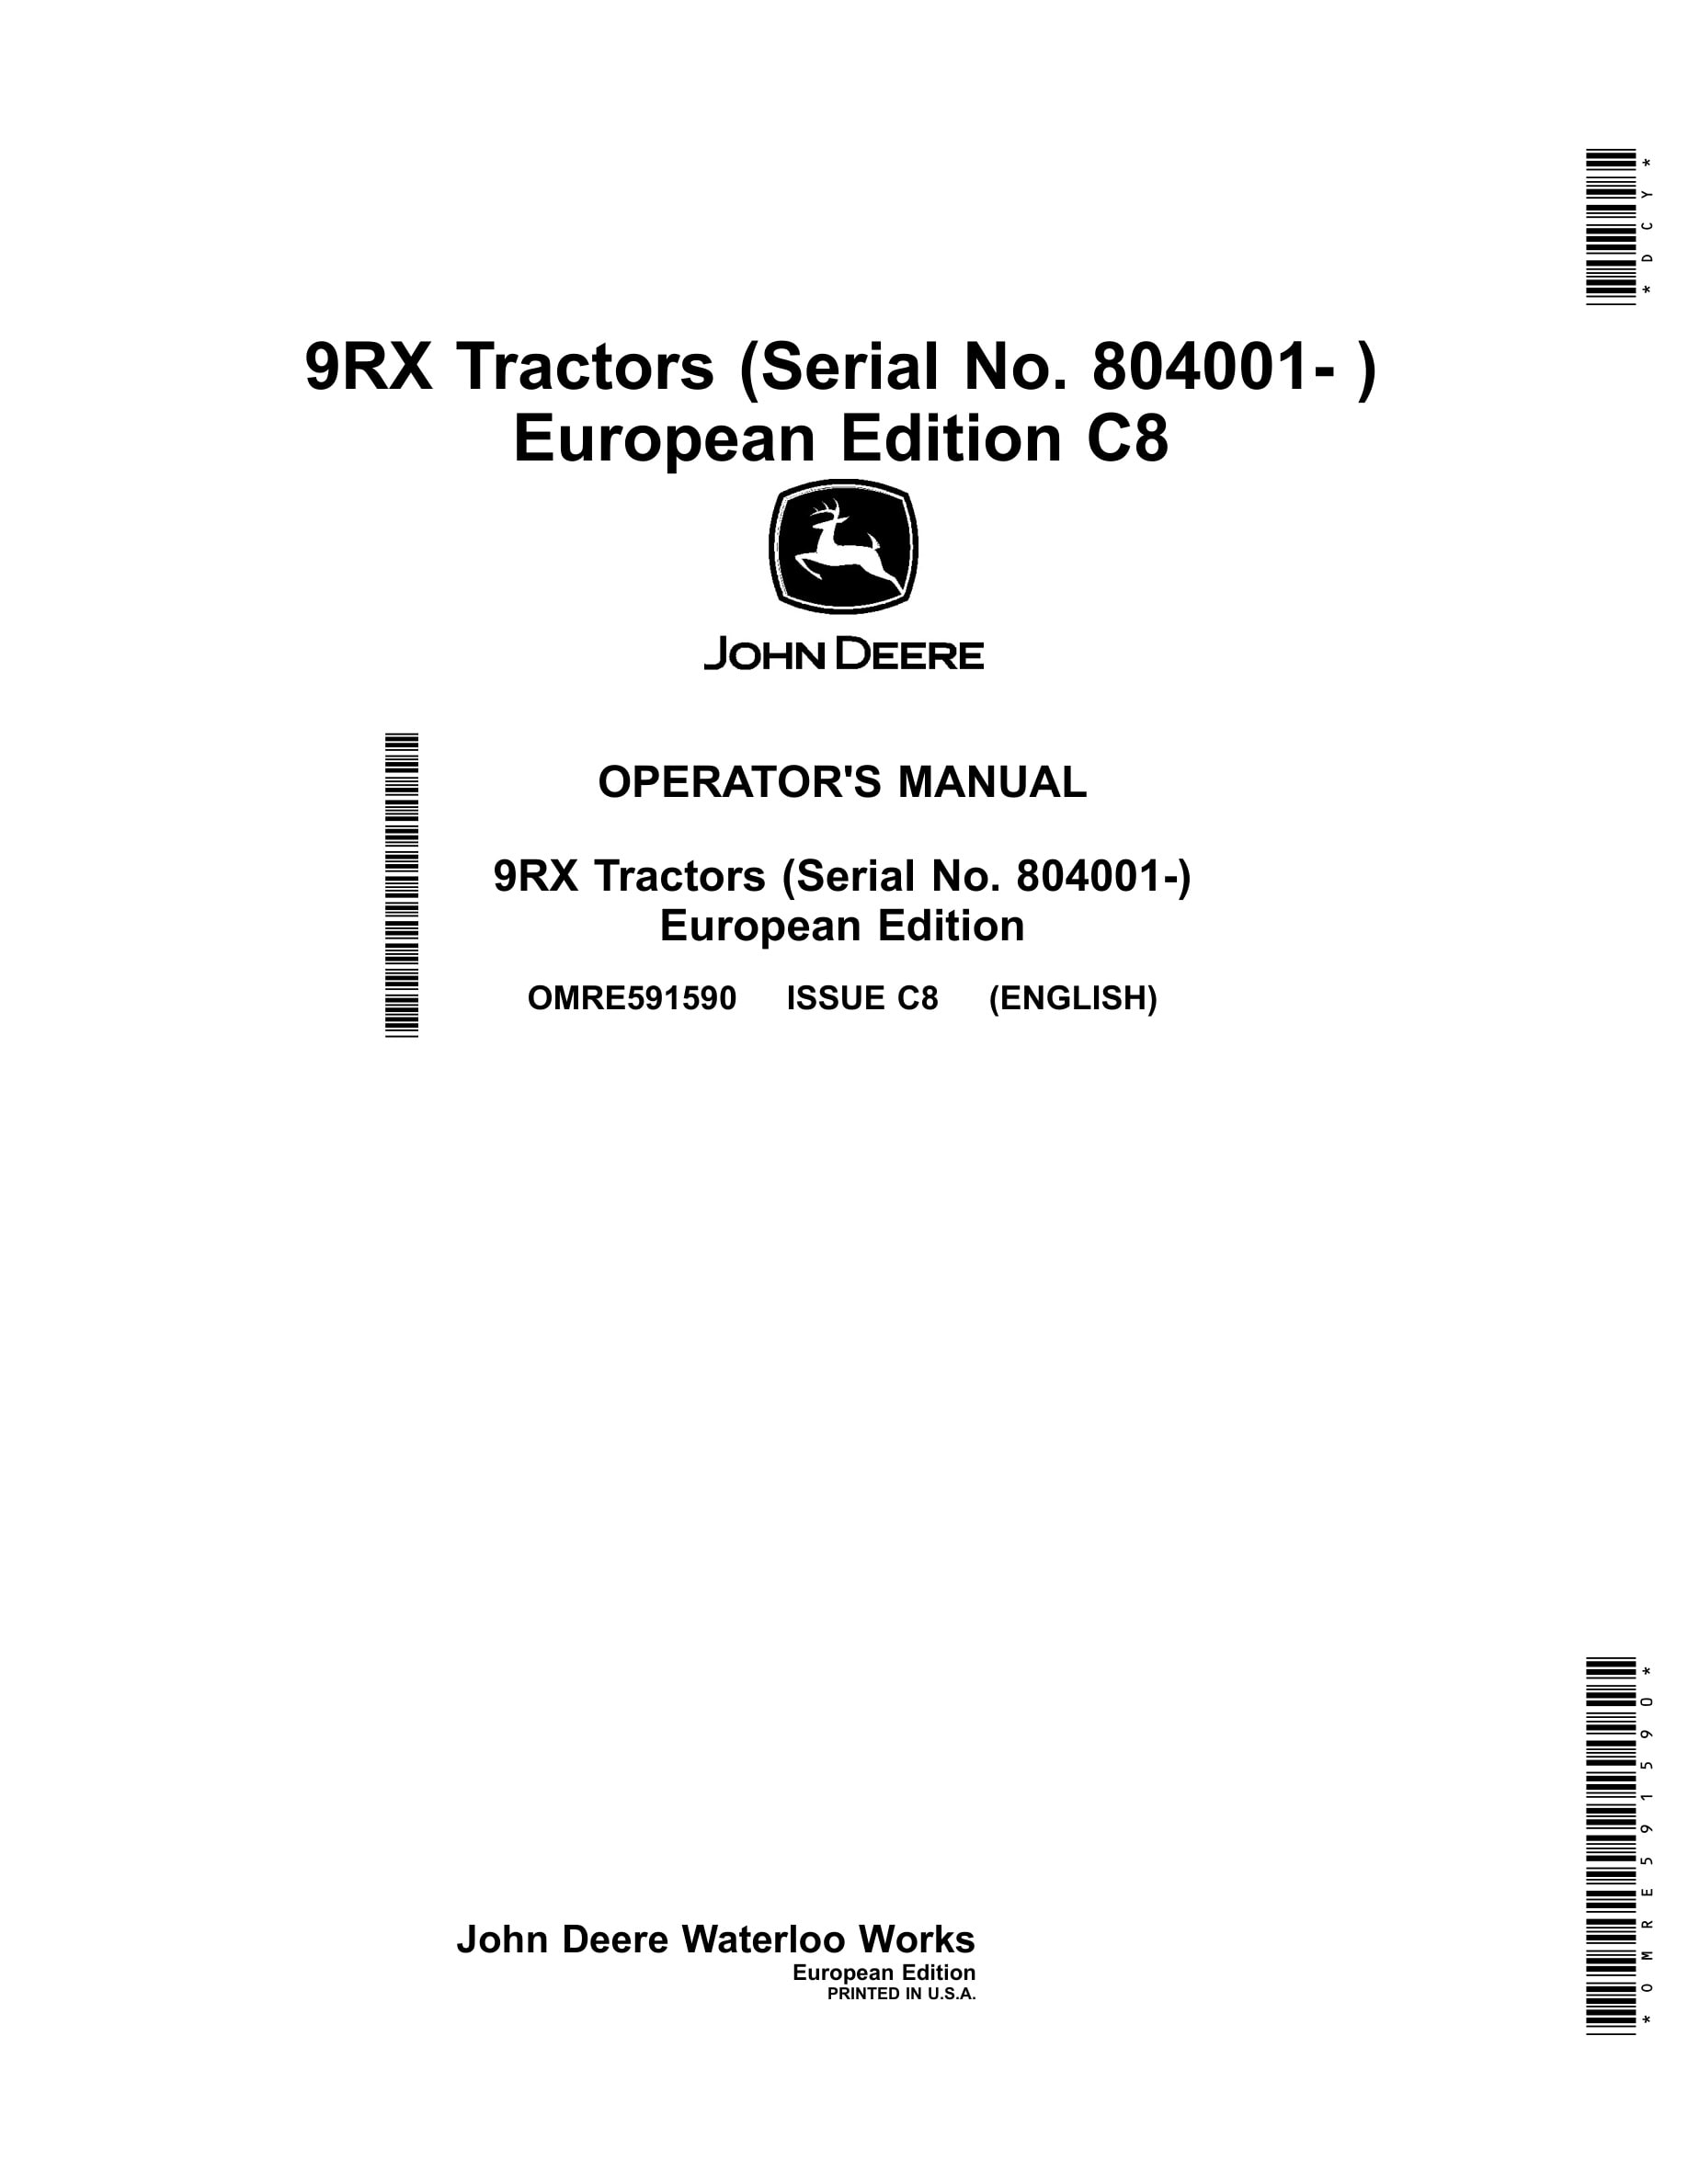 John Deere 9rx Tractors Operator Manuals OMRE591590-1